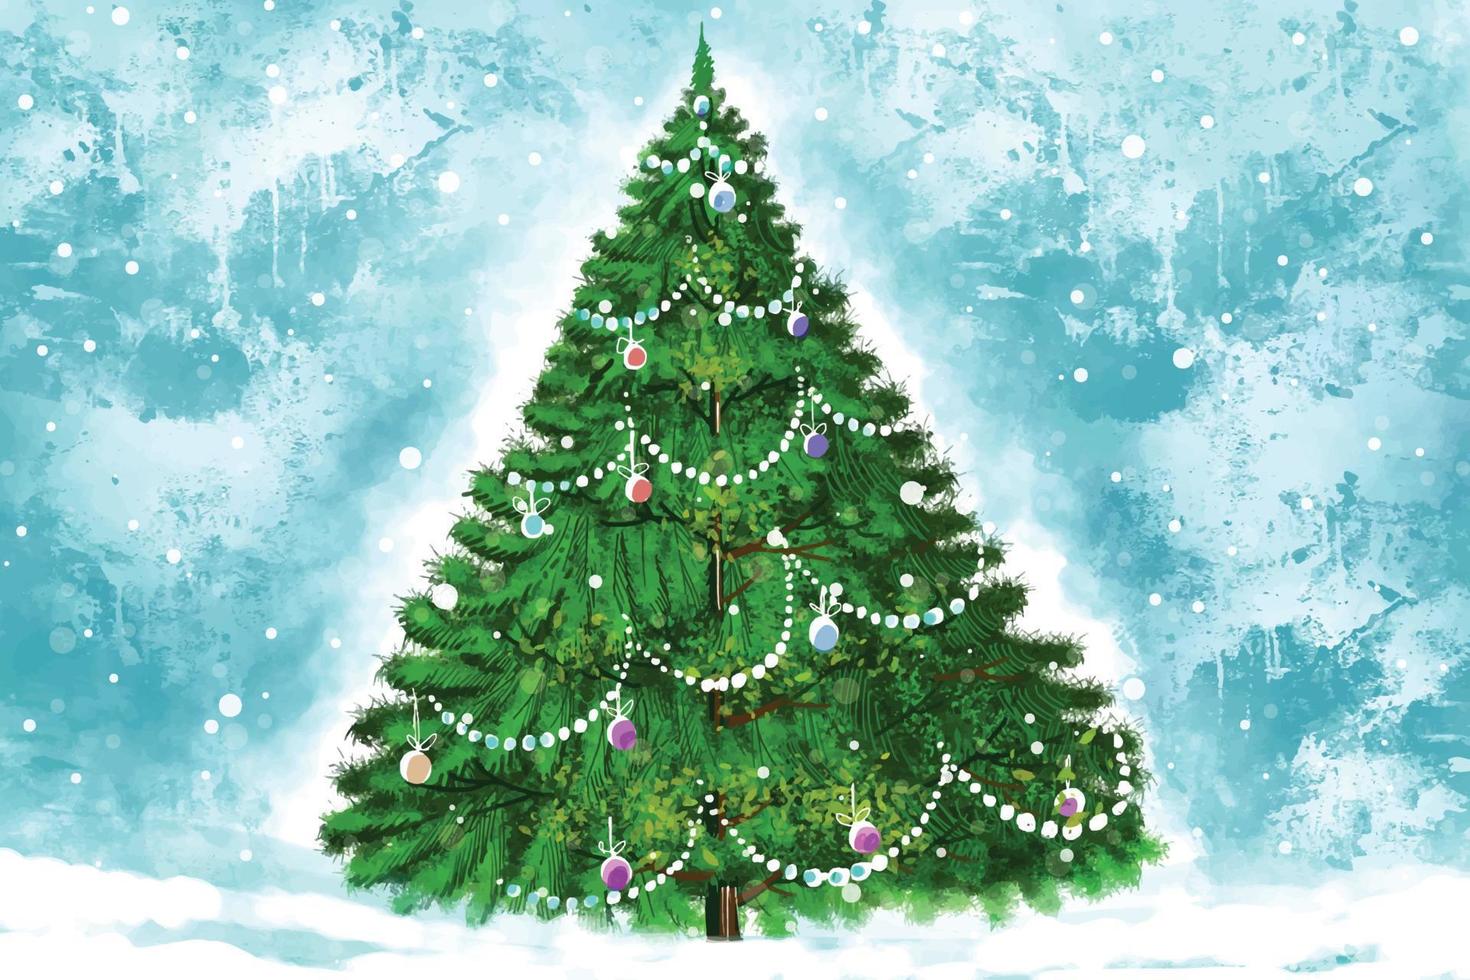 jul vinter- landskap av kall väder och frost jul träd bakgrund vektor